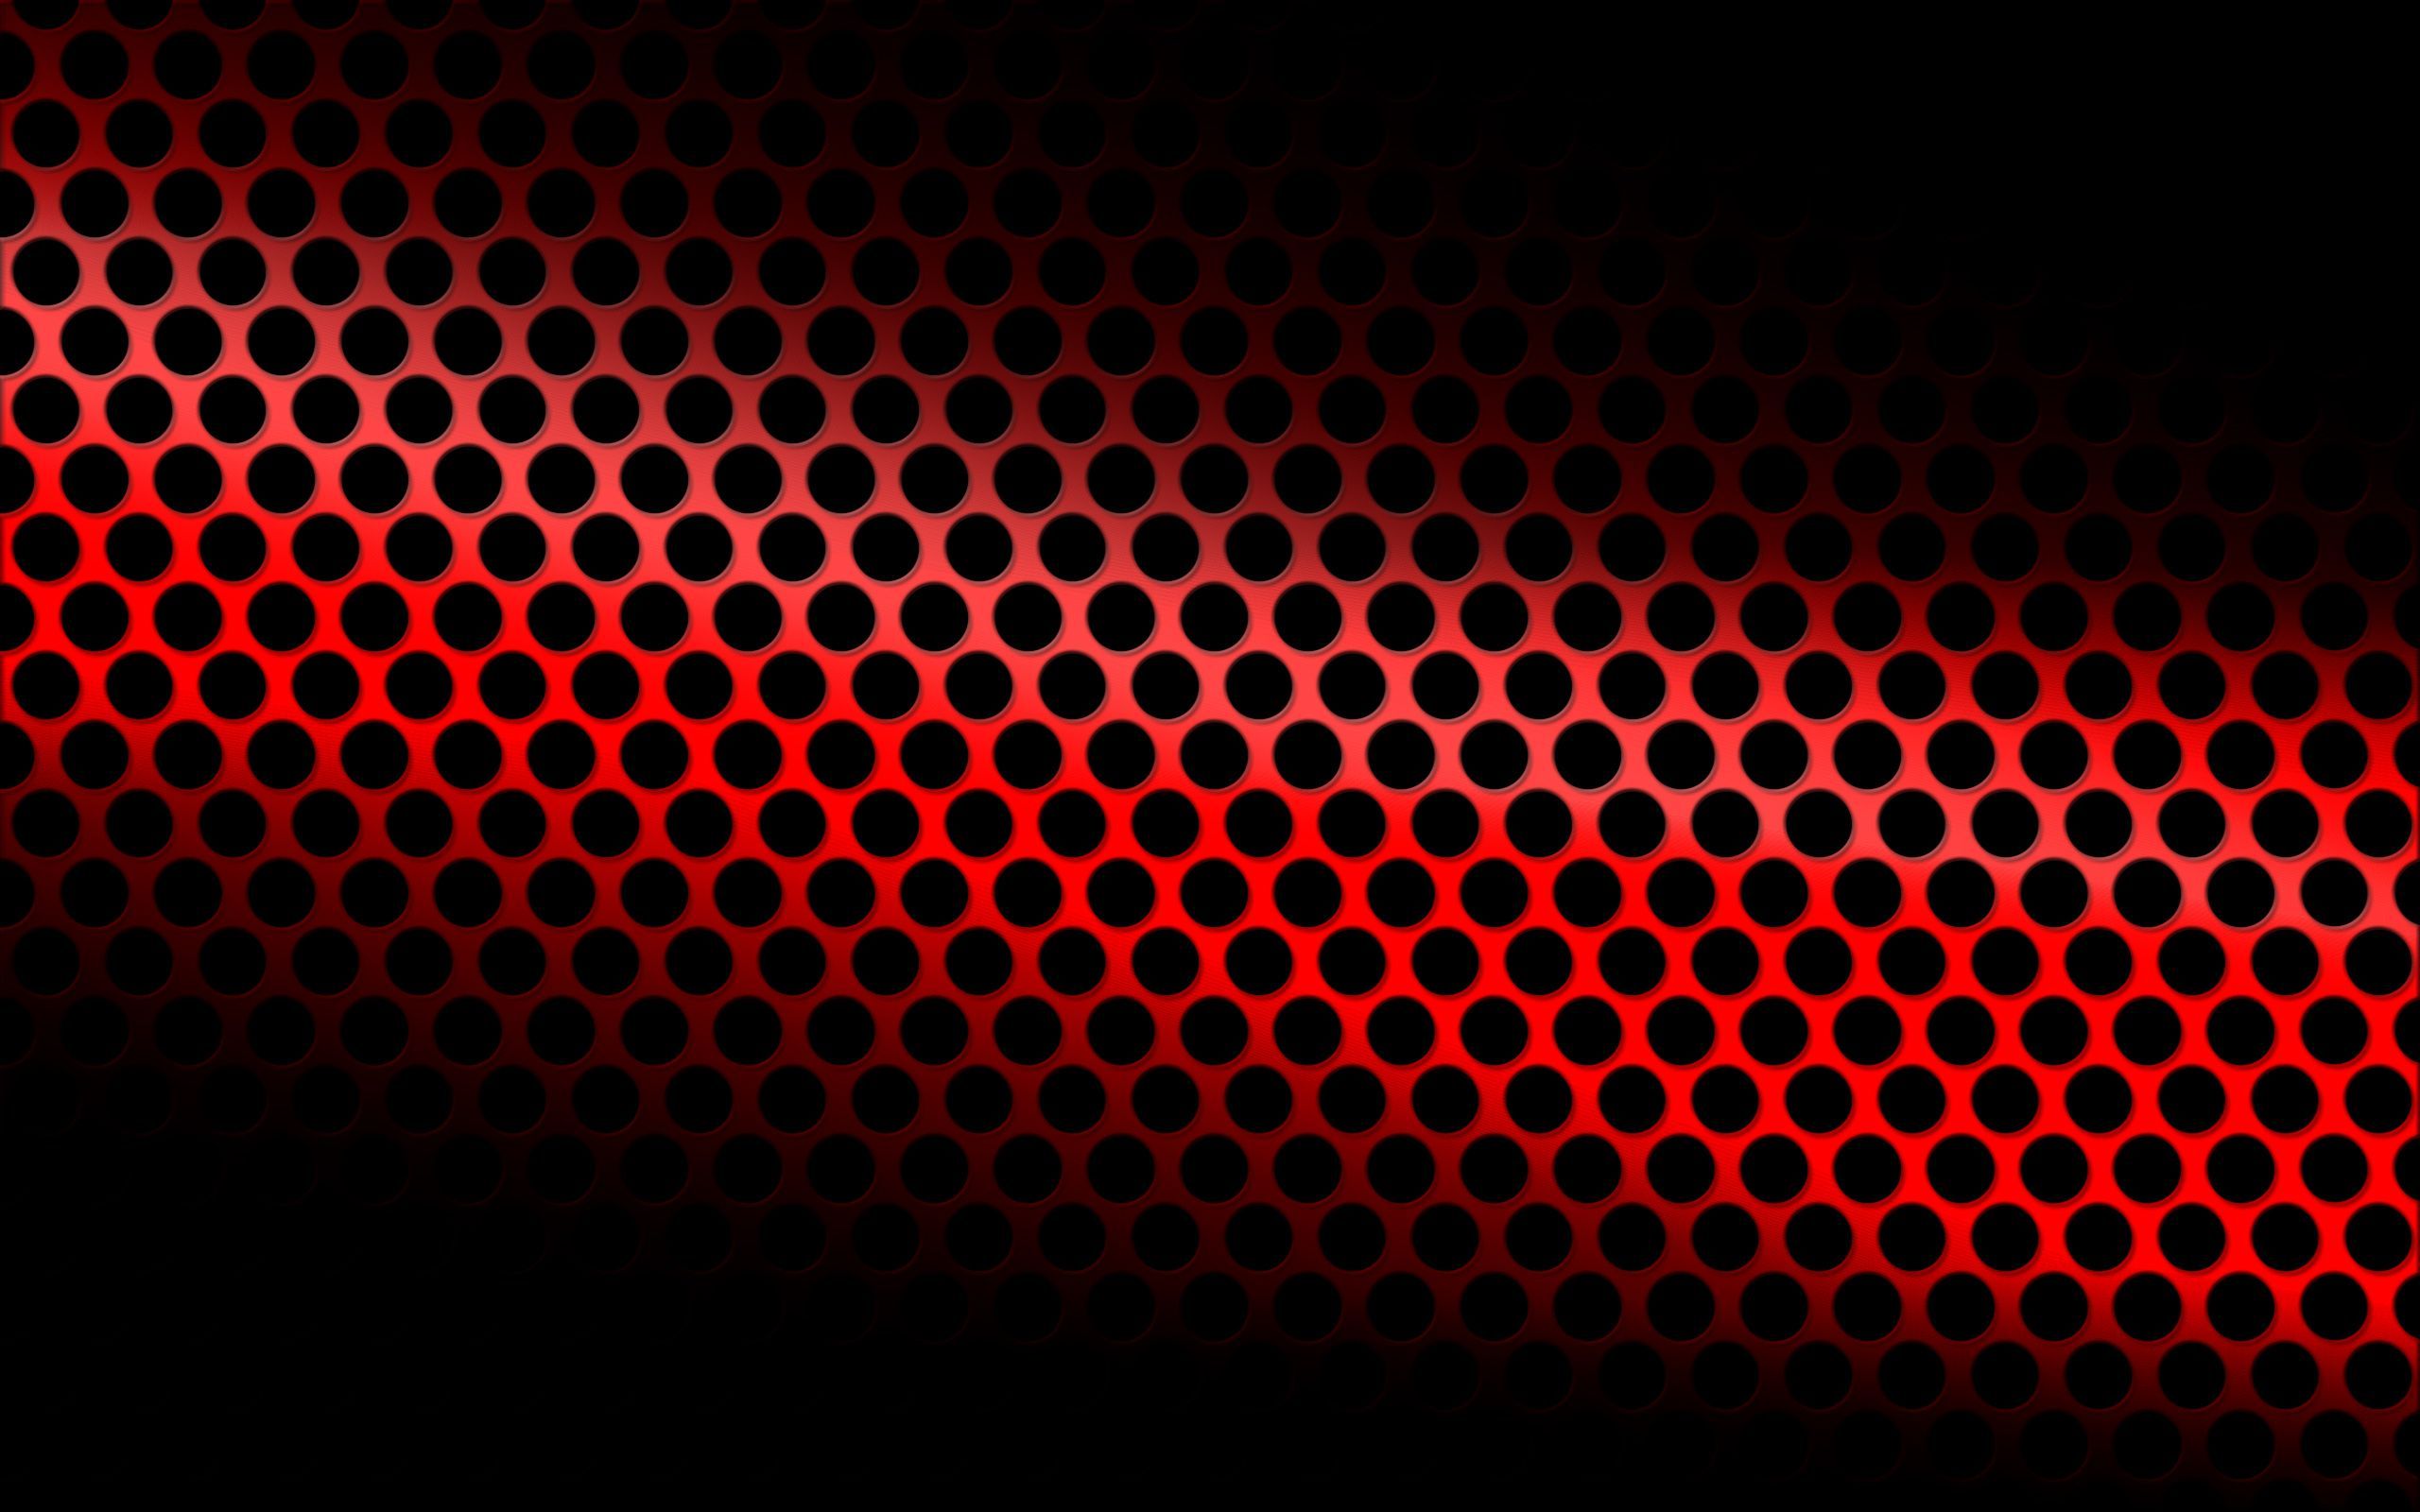 Giữa không gian hình ảnh đen trắng đơn giản, hình nền đỏ đen sẽ tạo ra sự tương phản đầy ấn tượng và cuốn hút.